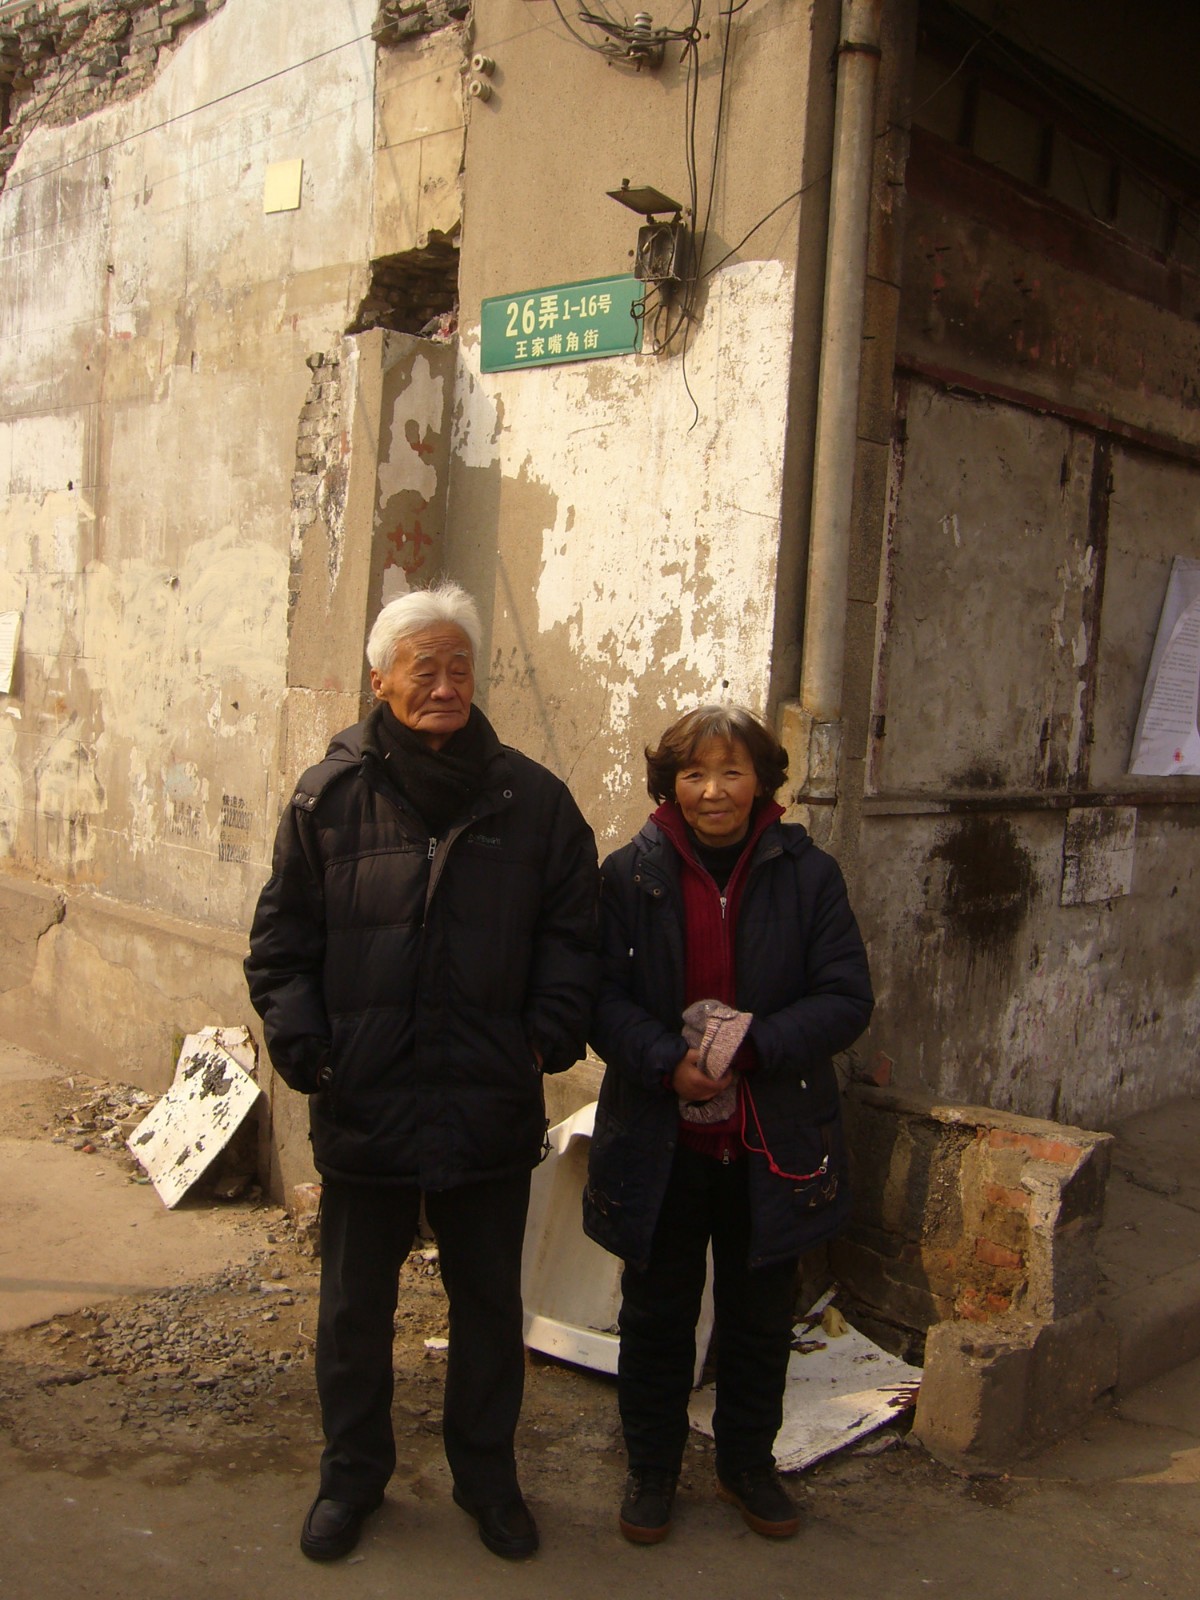 2013年2月13日父母在王家嘴角街旧居路牌下留影.JPG